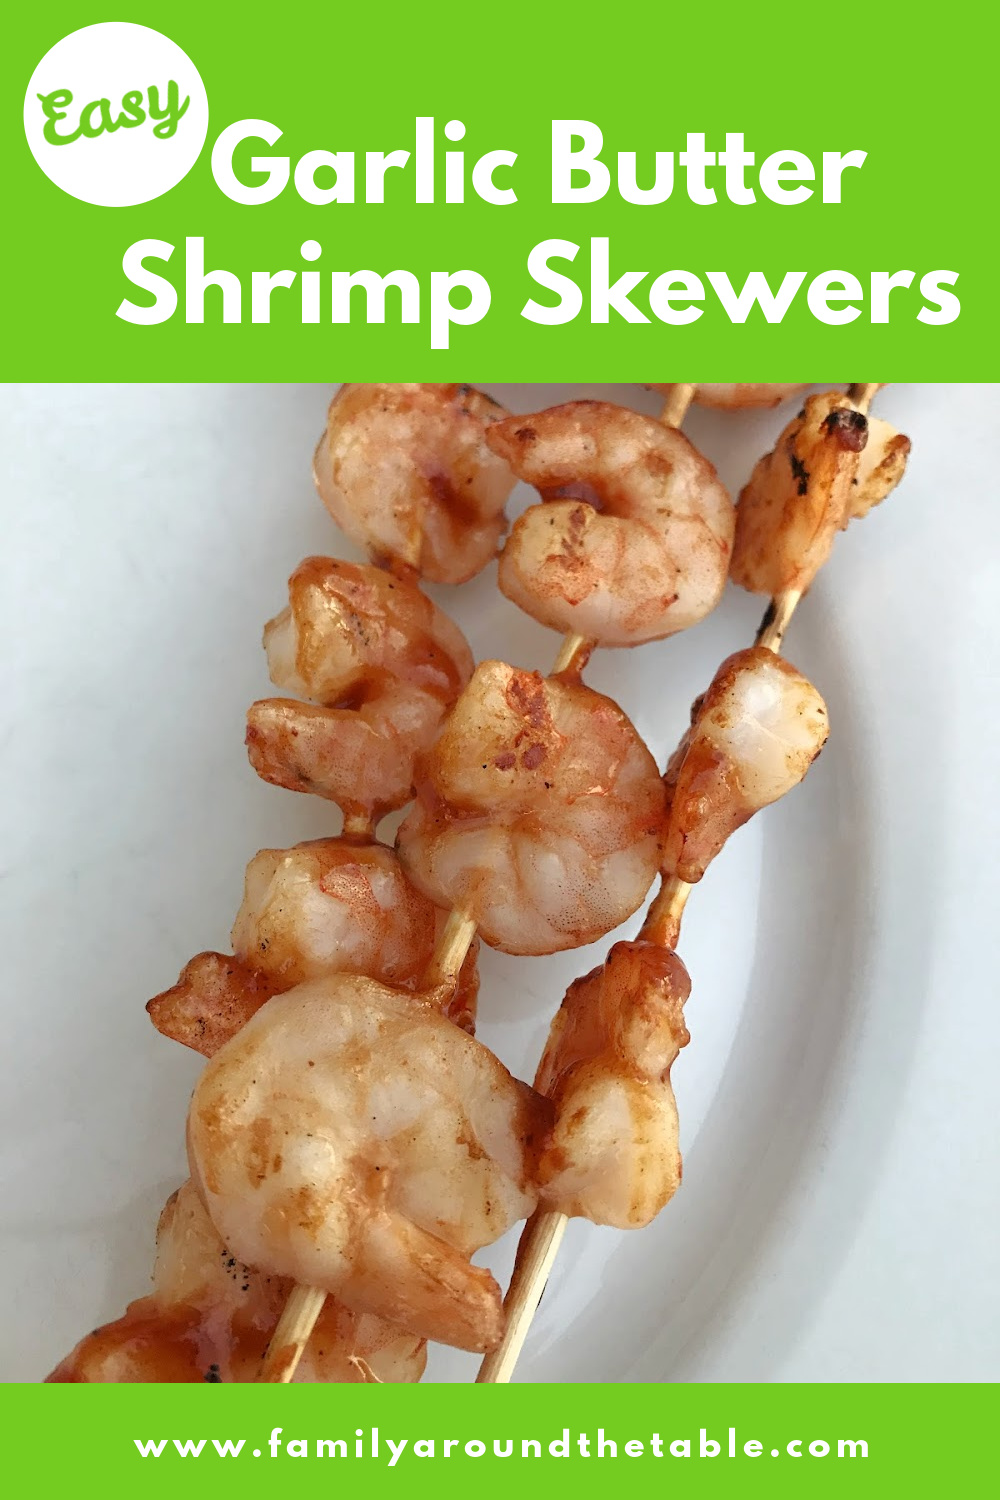 Garlic Butter Shrimp Skewers Pinterest image